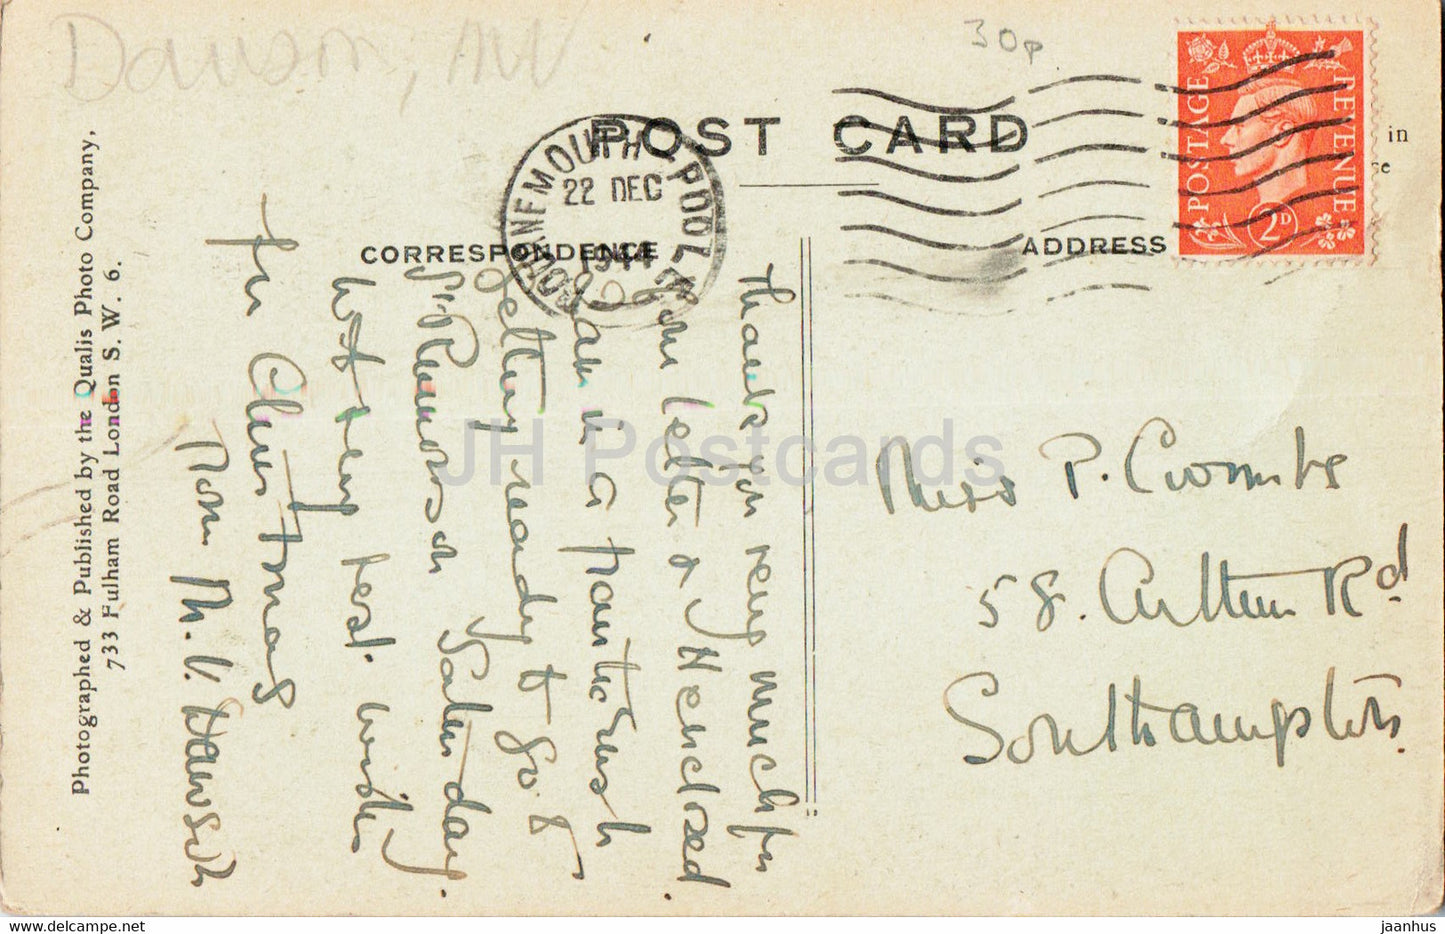 The Beeches – alte Postkarte – 1944 – England – Vereinigtes Königreich – gebraucht